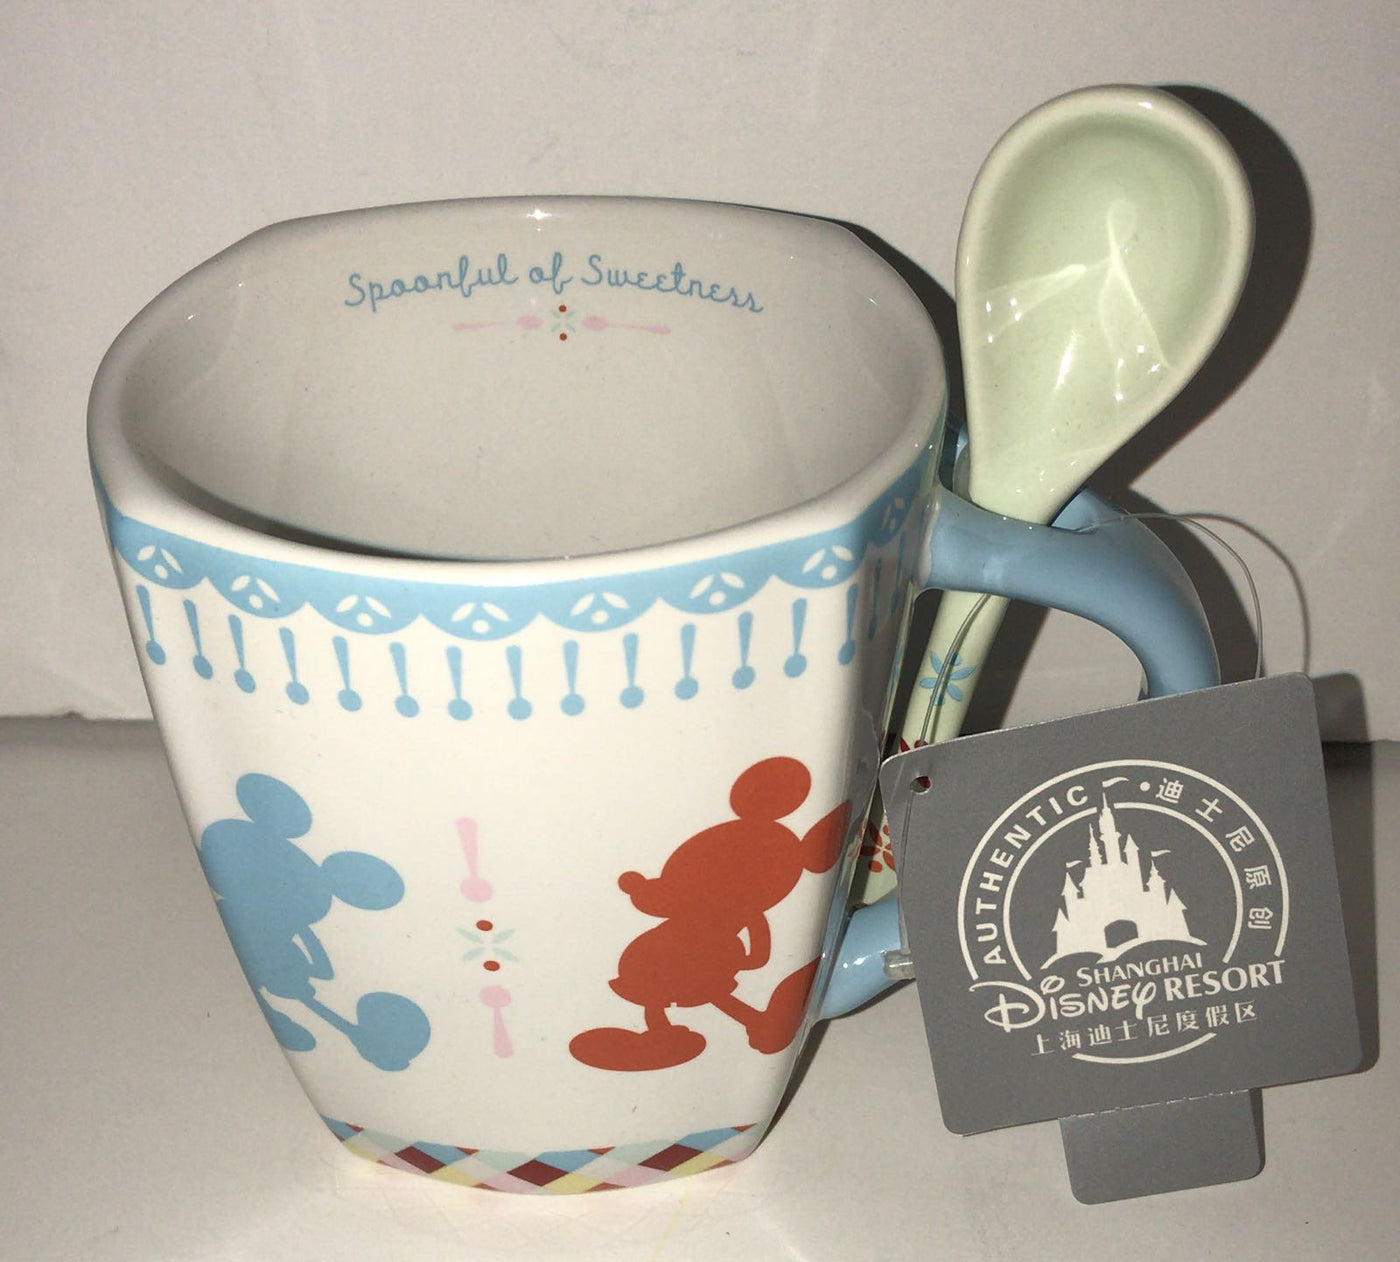 Disney Parks Shanghai Mickey Minnie Spoonful of Sweetness w Spoon Coffee Mug New